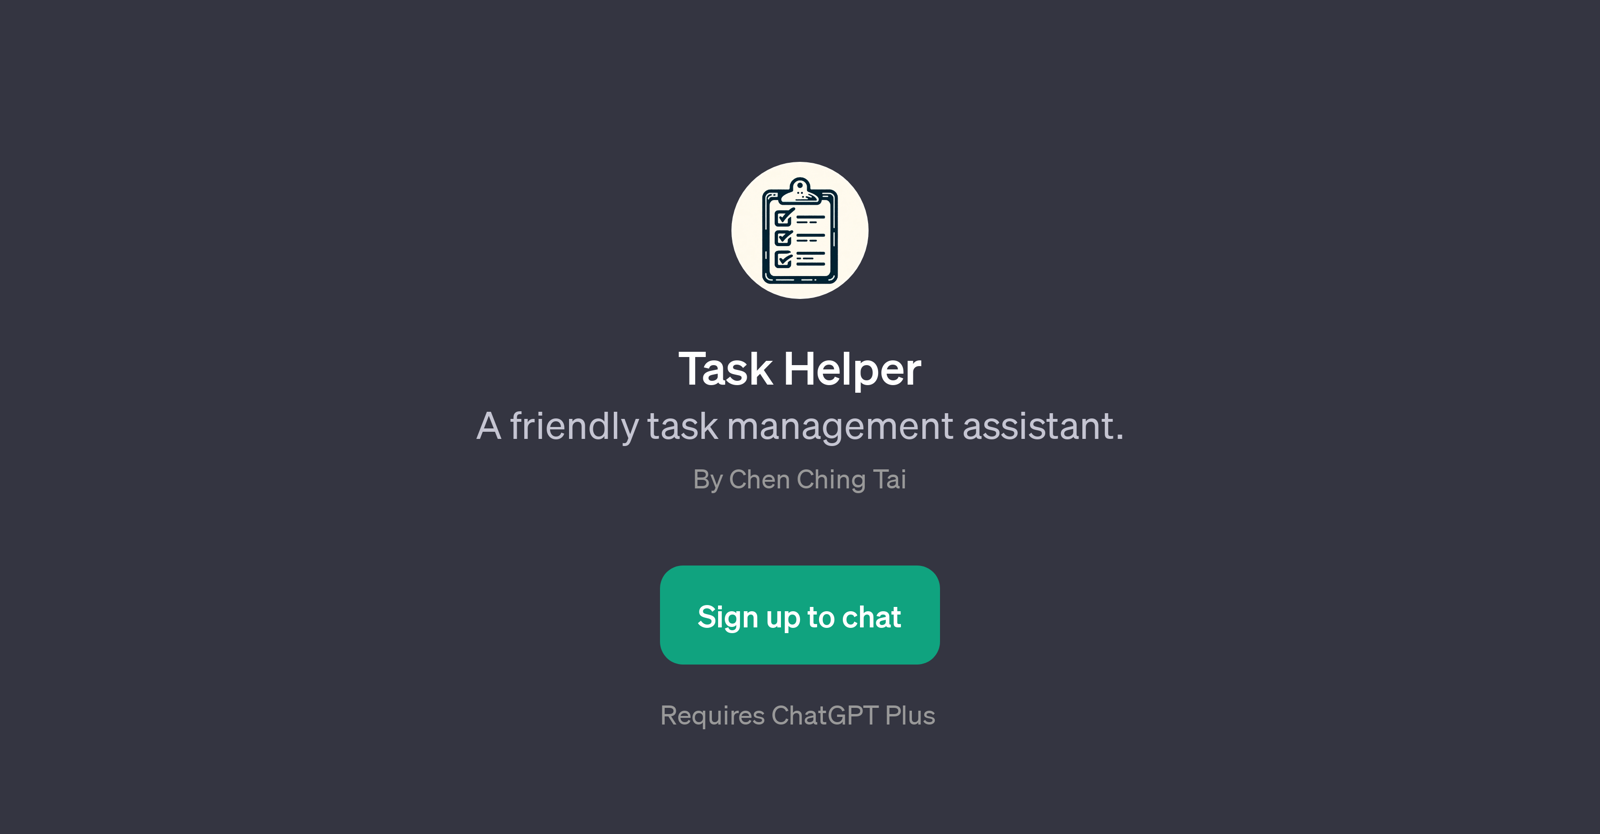 Task Helper website